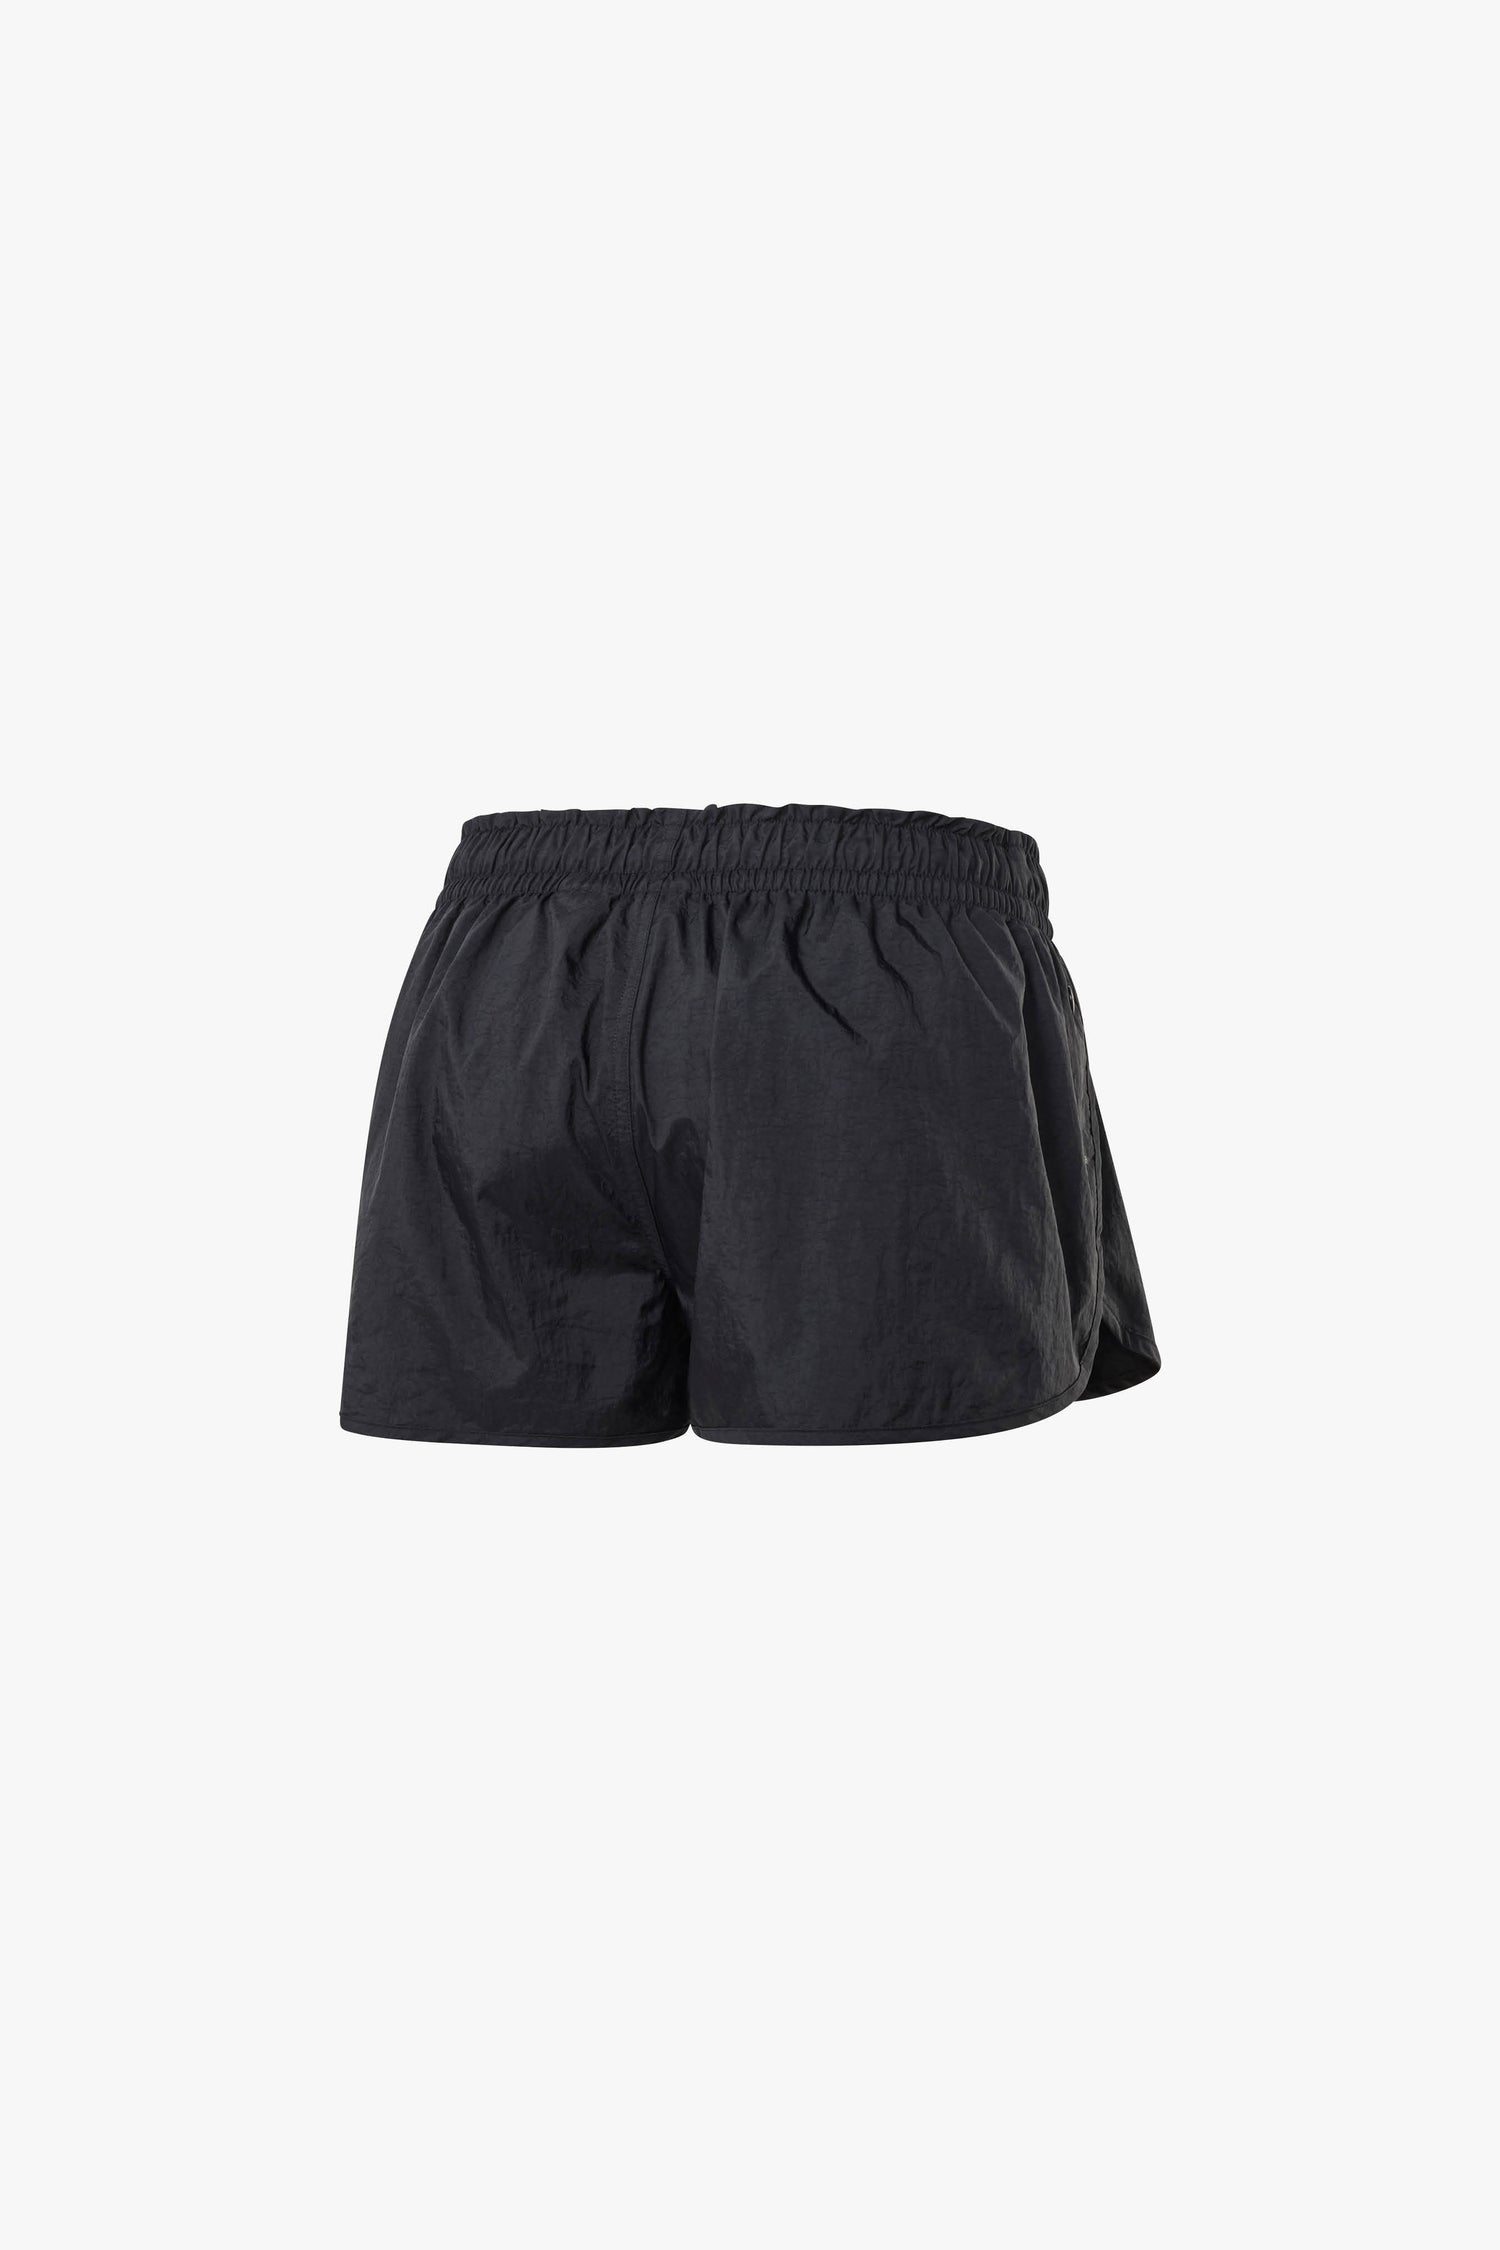 reebok running shorts